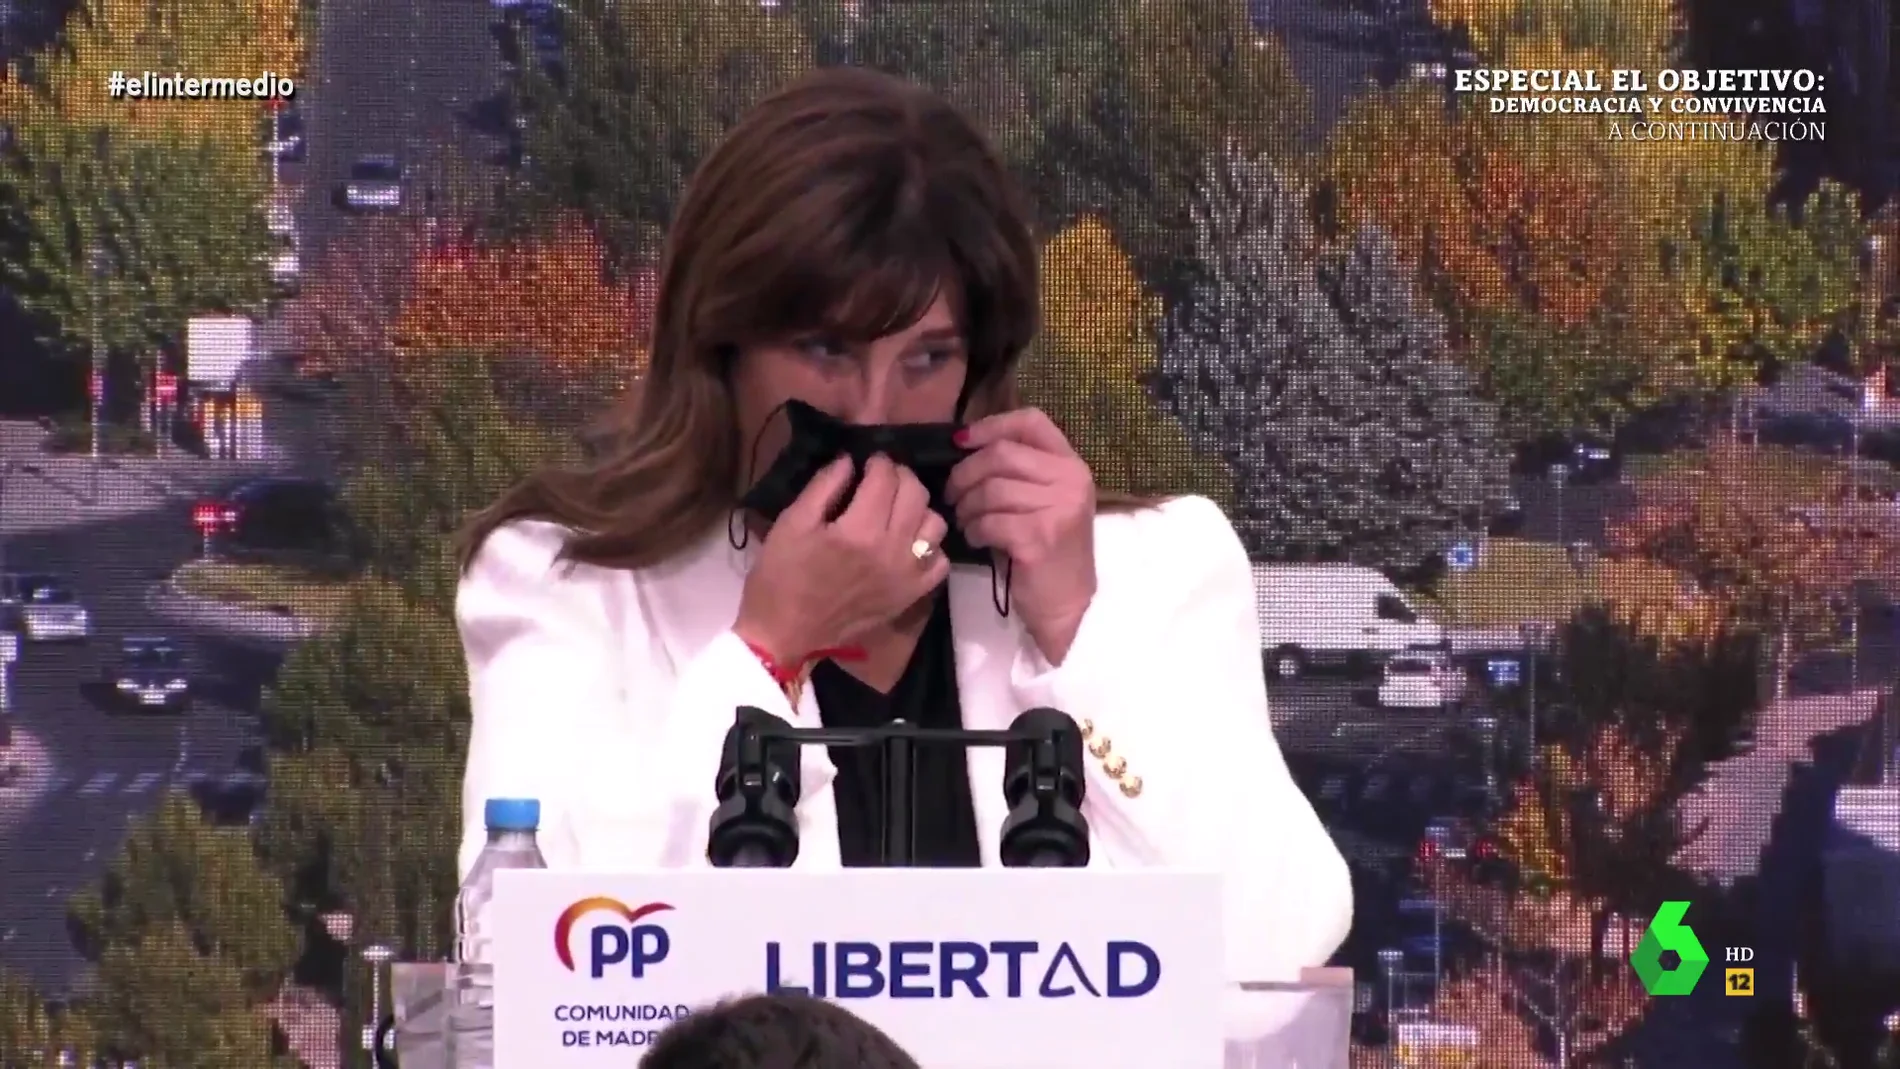 El momento en el que la alcaldesa de Pozuelo usa su mascarilla para "sacarse petróleo"